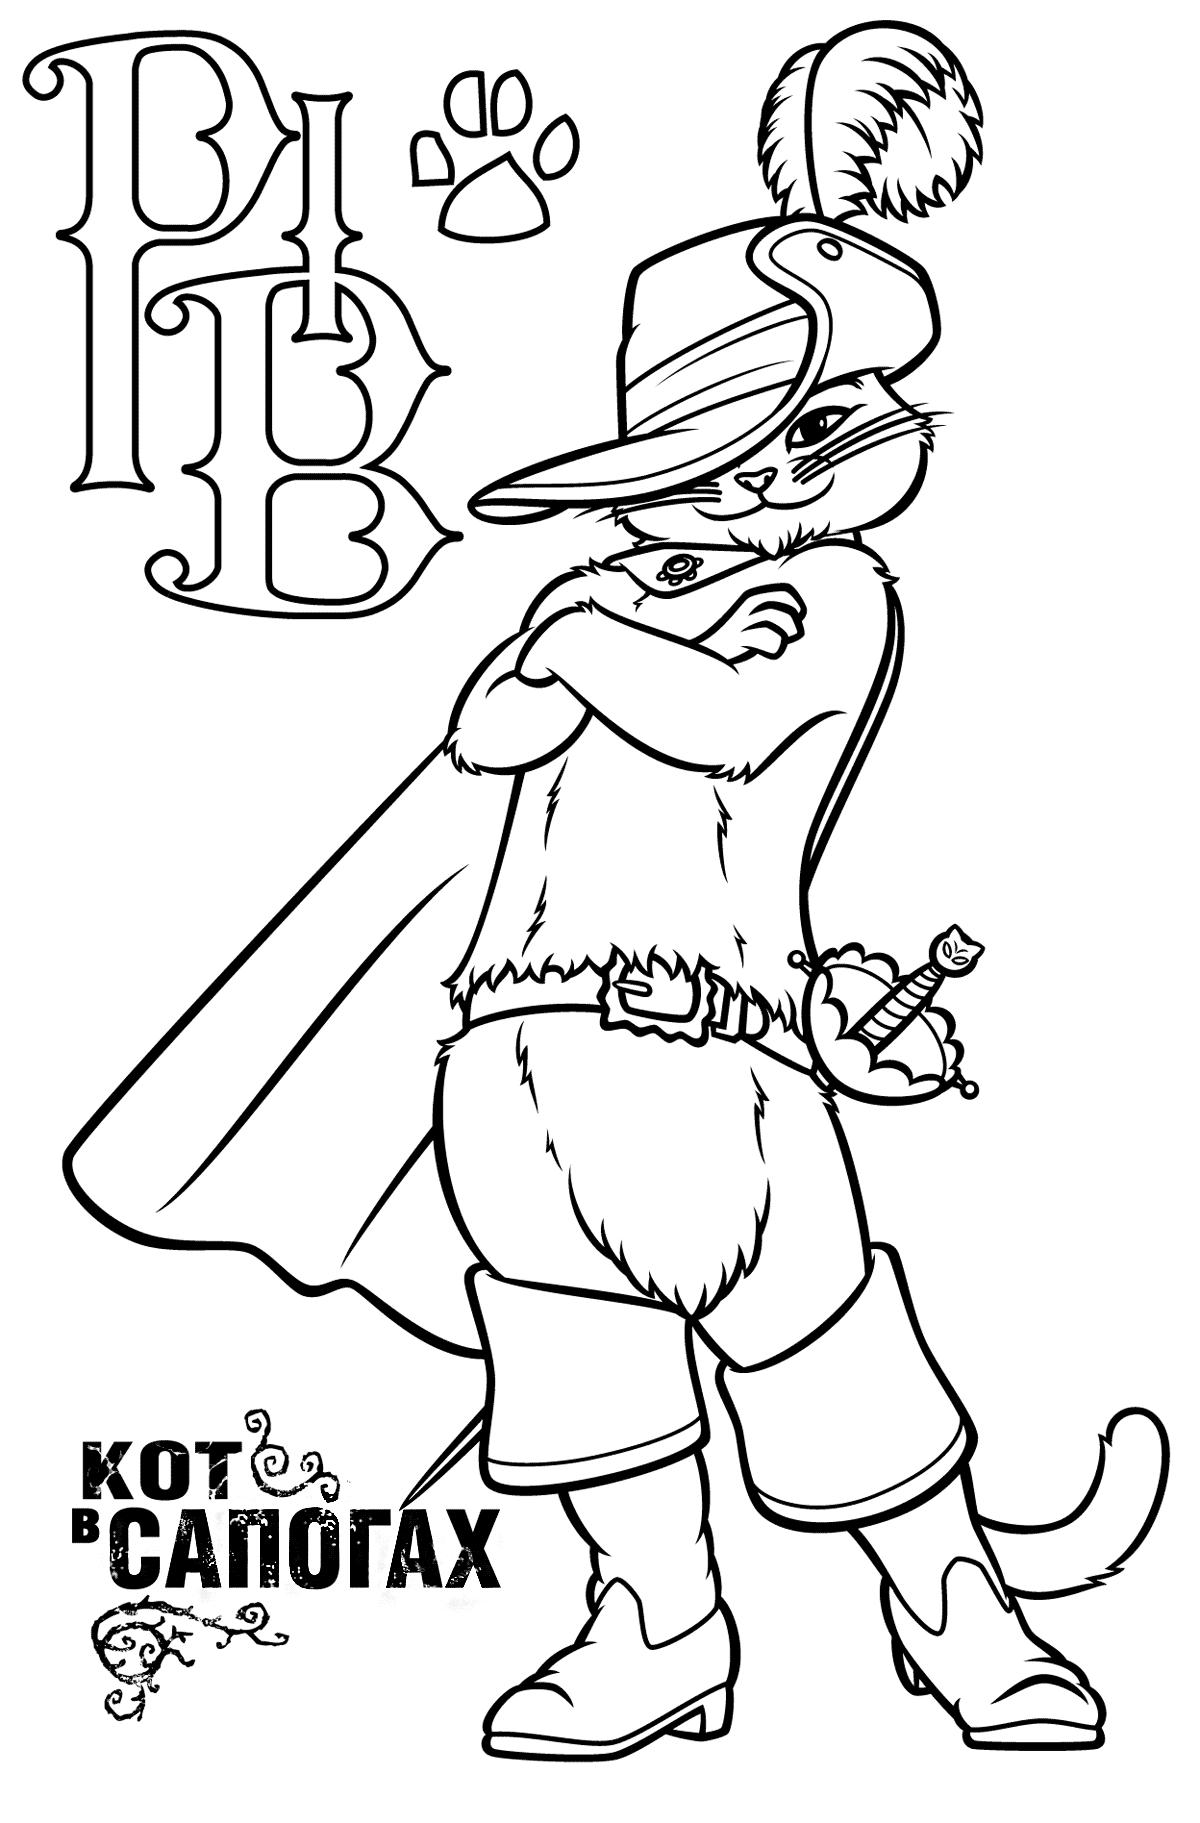  Кот в сапогах с логотипом мультфильма